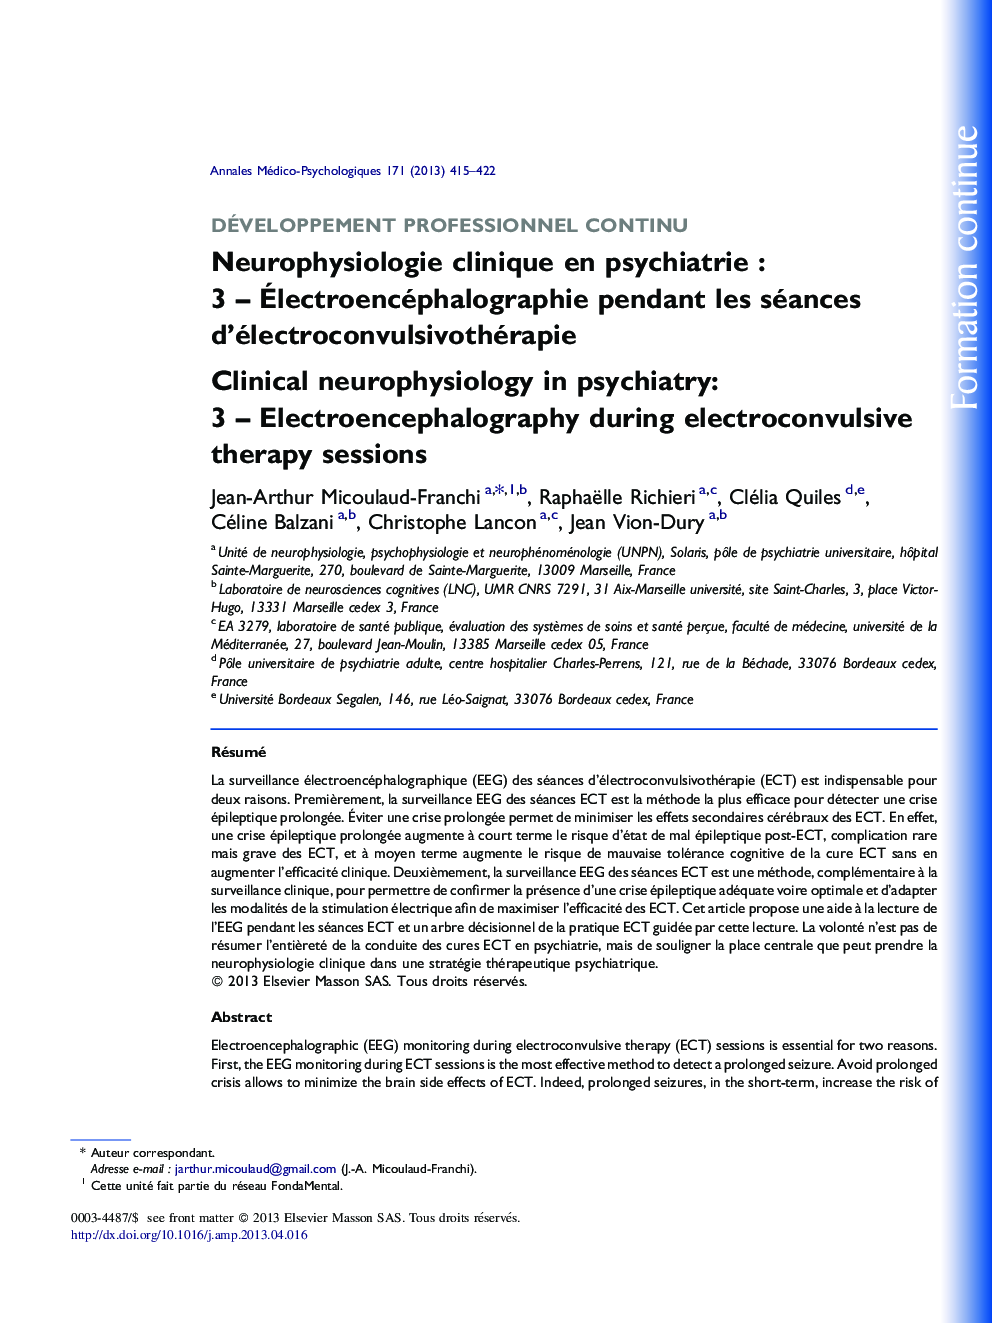 Neurophysiologie clinique en psychiatrie : 3 – Électroencéphalographie pendant les séances d’électroconvulsivothérapie